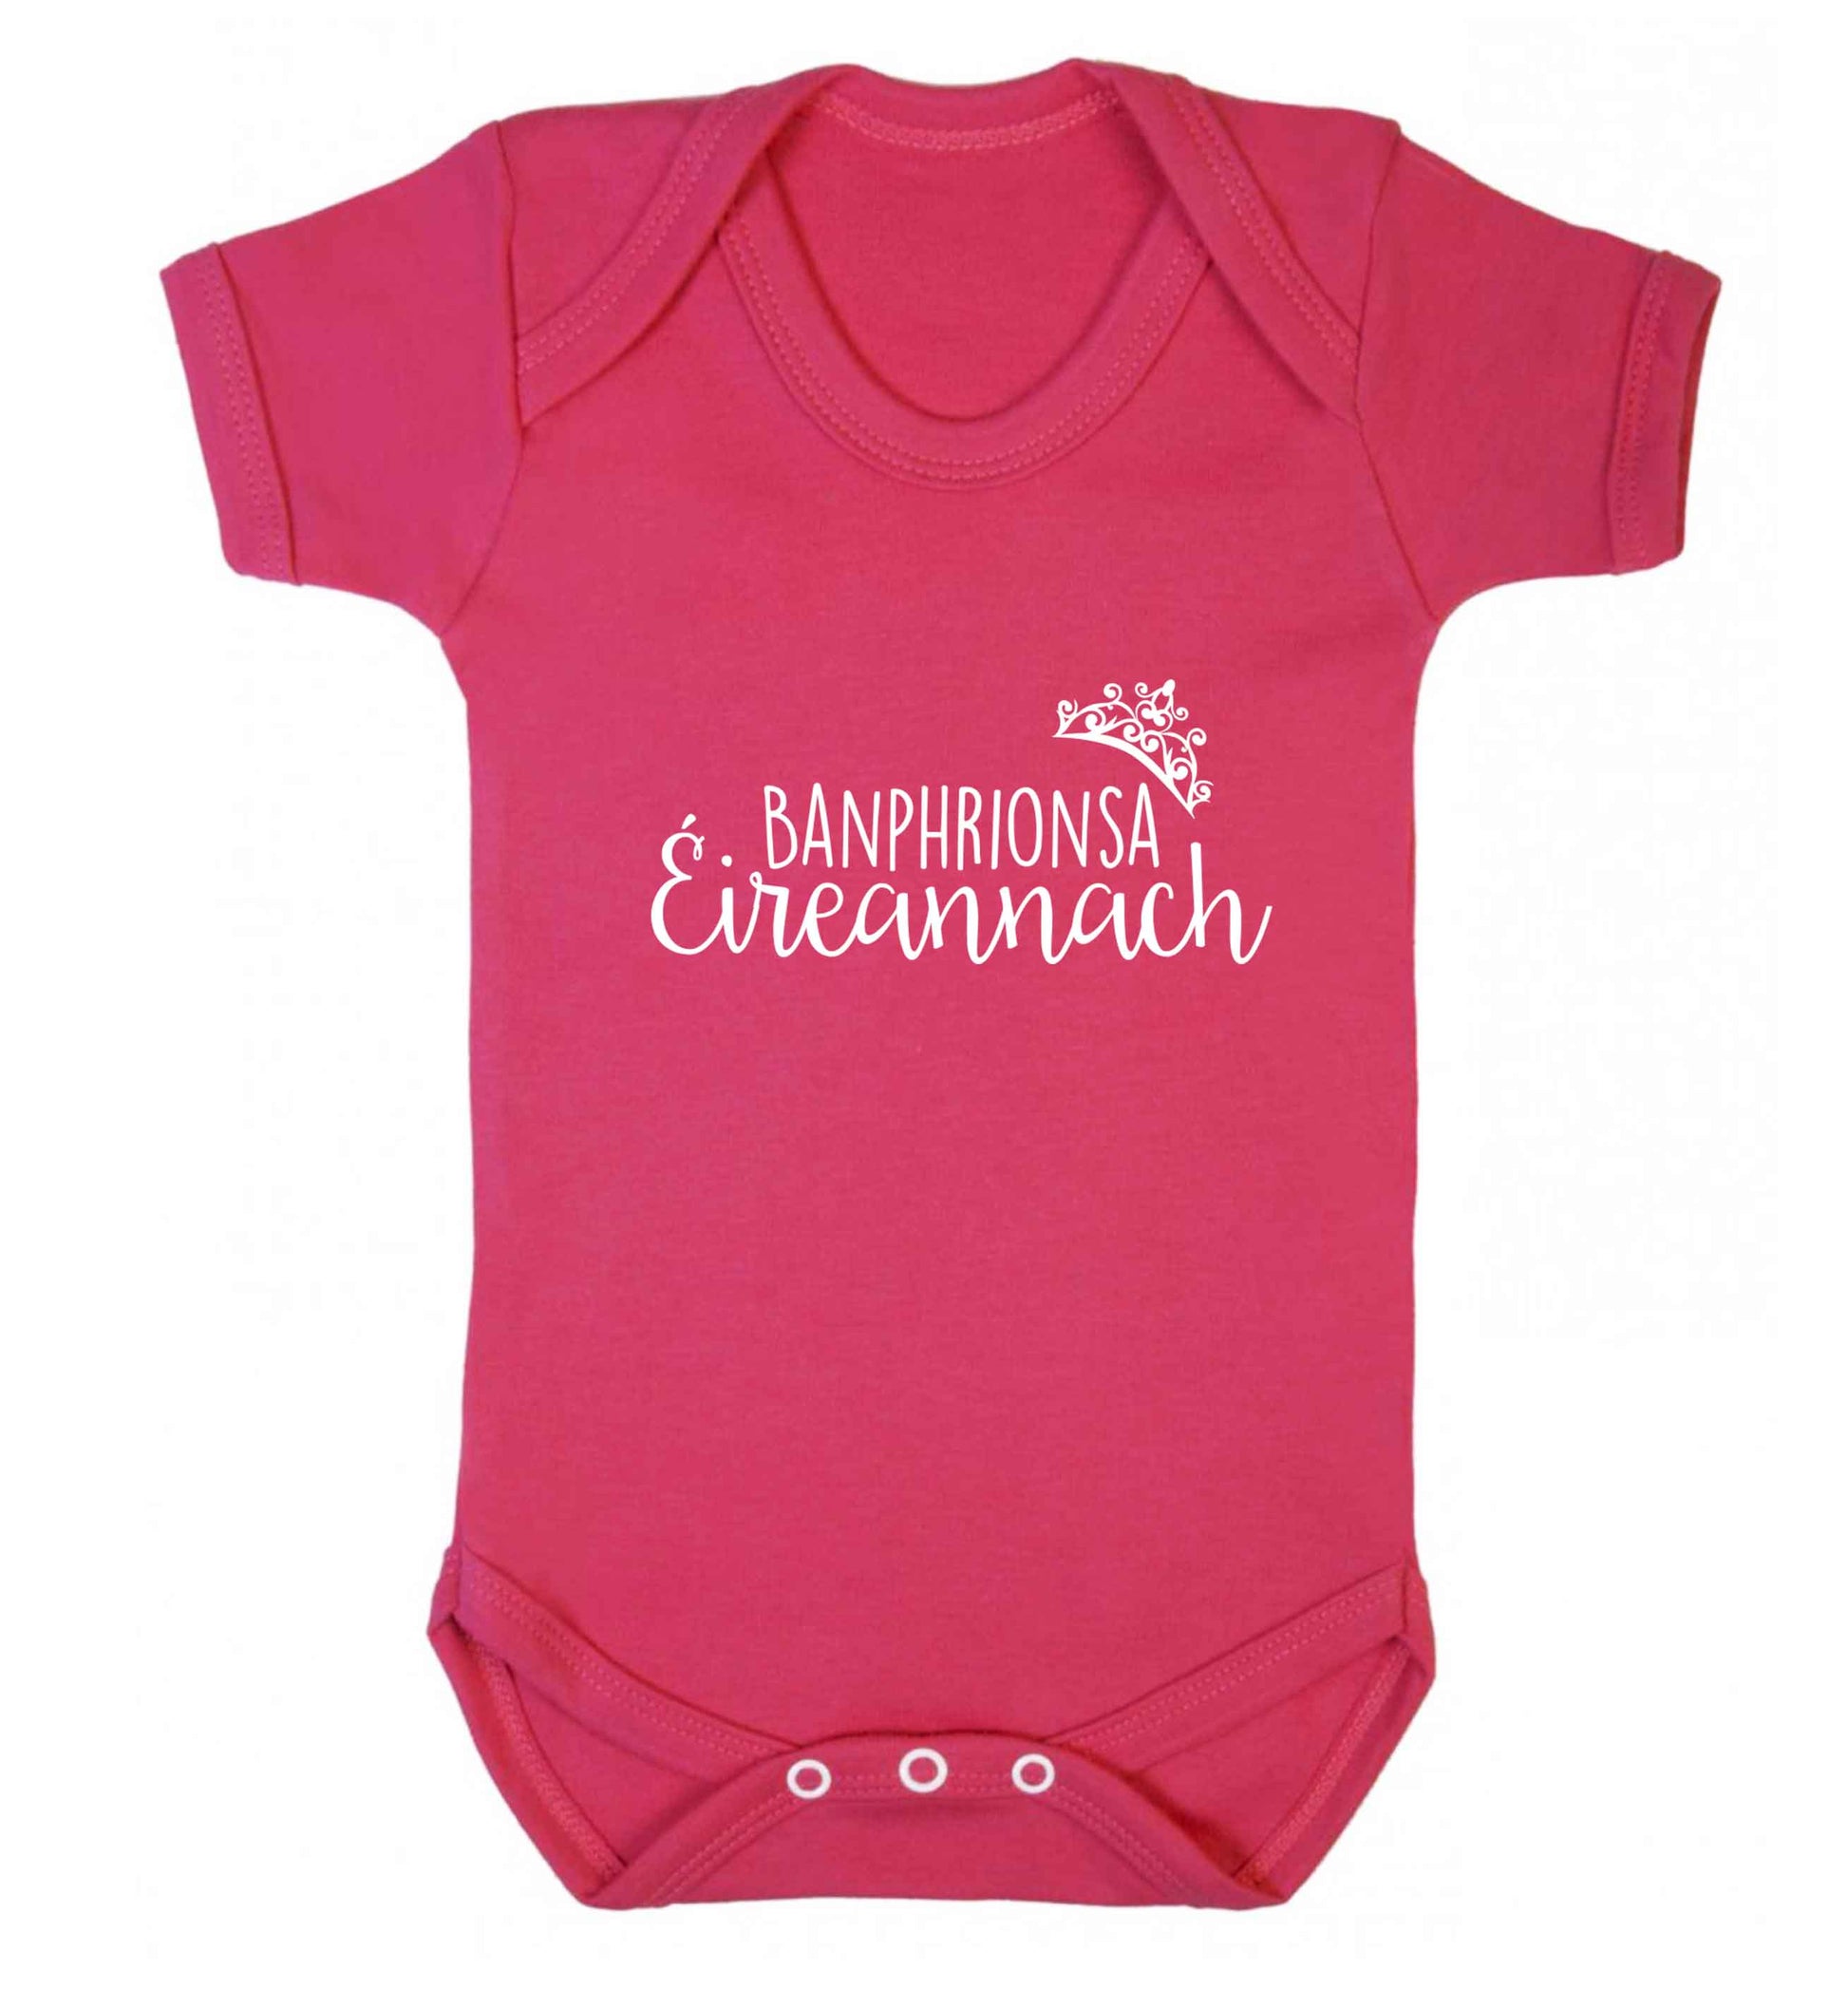 Banphrionsa eireannach baby vest dark pink 18-24 months